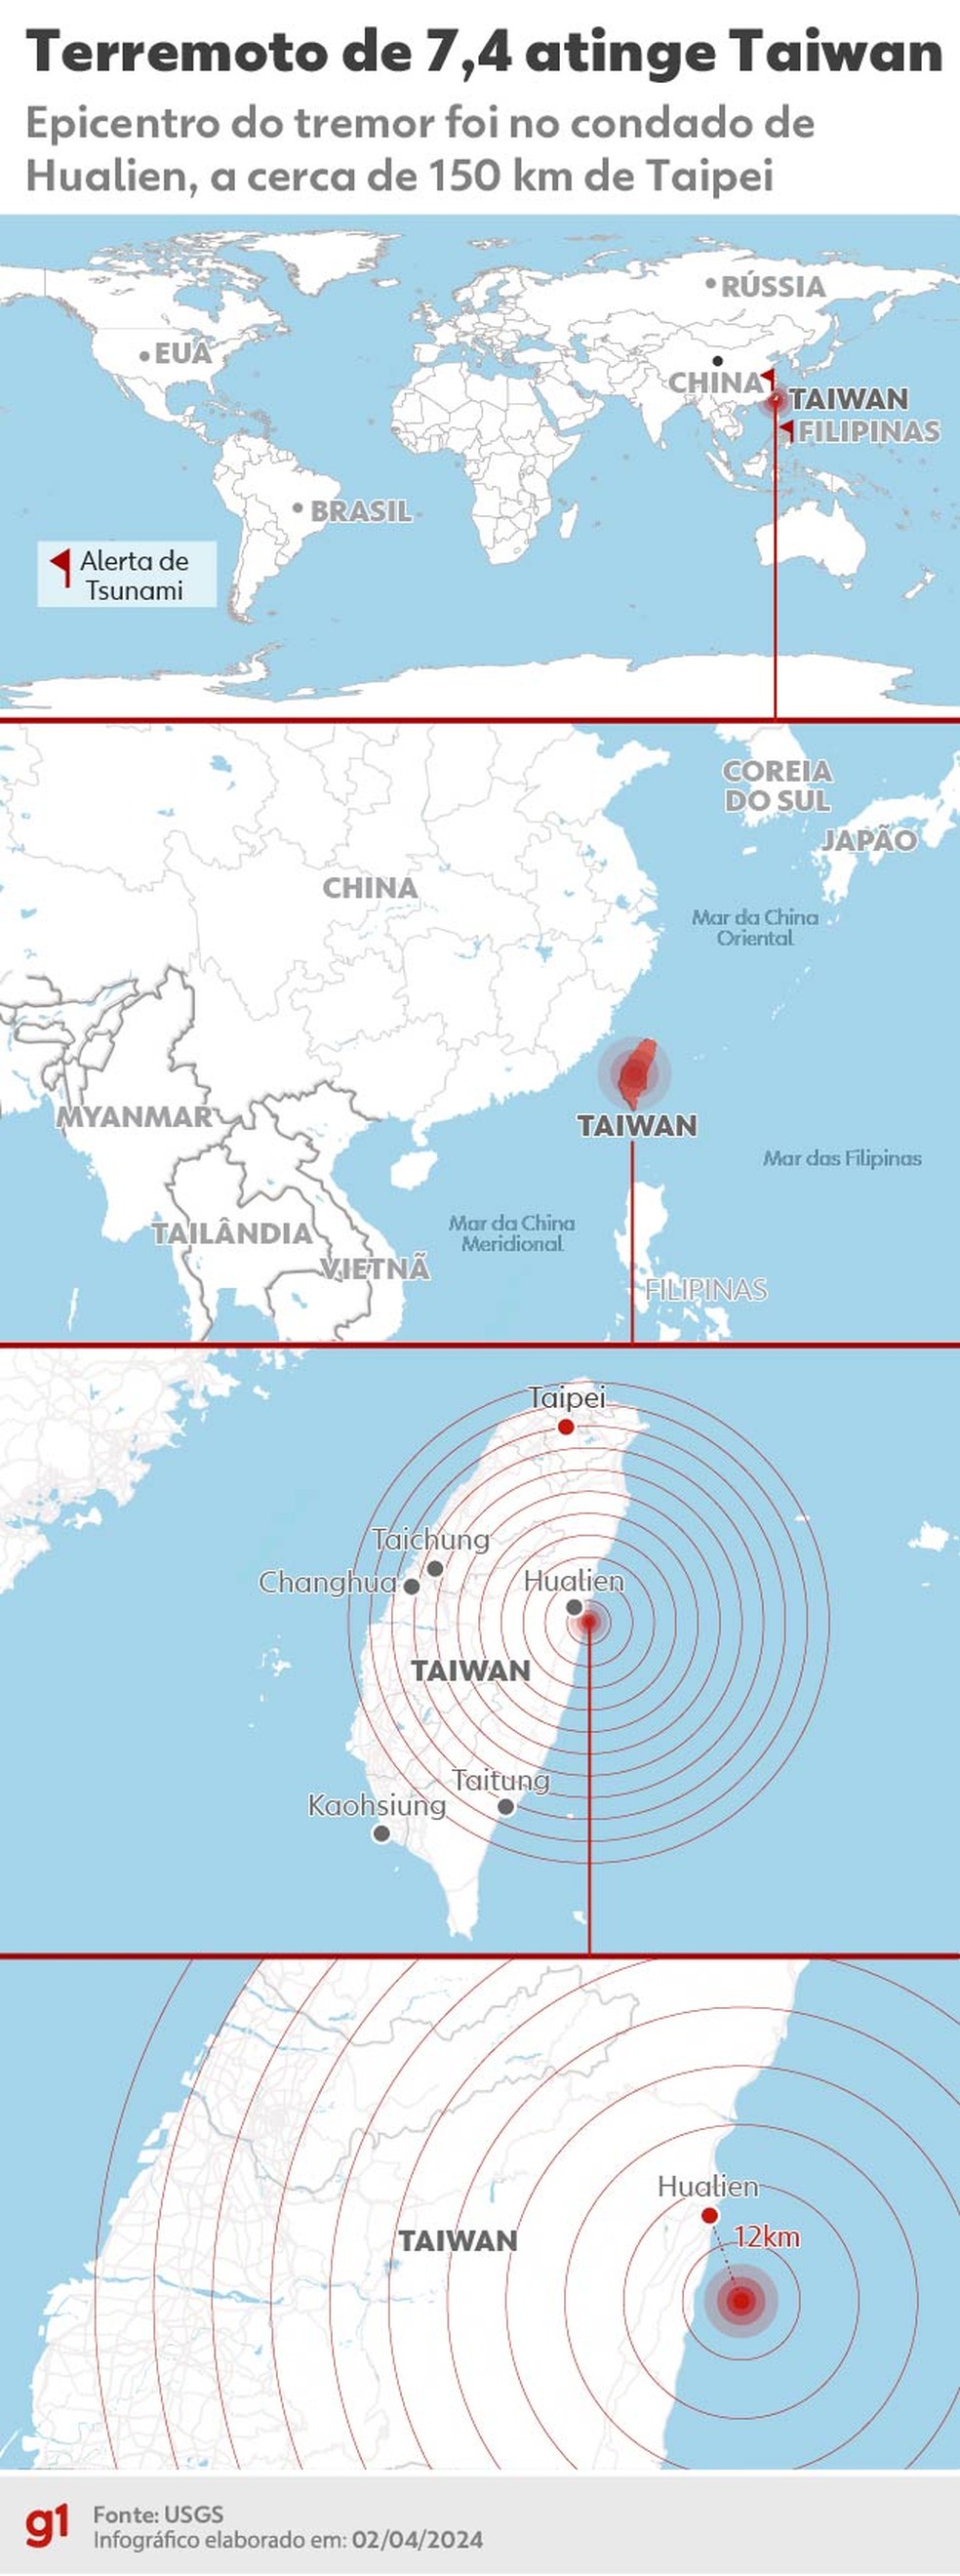 Mapa mostra epicentro do terremoto que atingiu Taiwan e o leste da Ásia — Foto: Editoria de Arte/g1